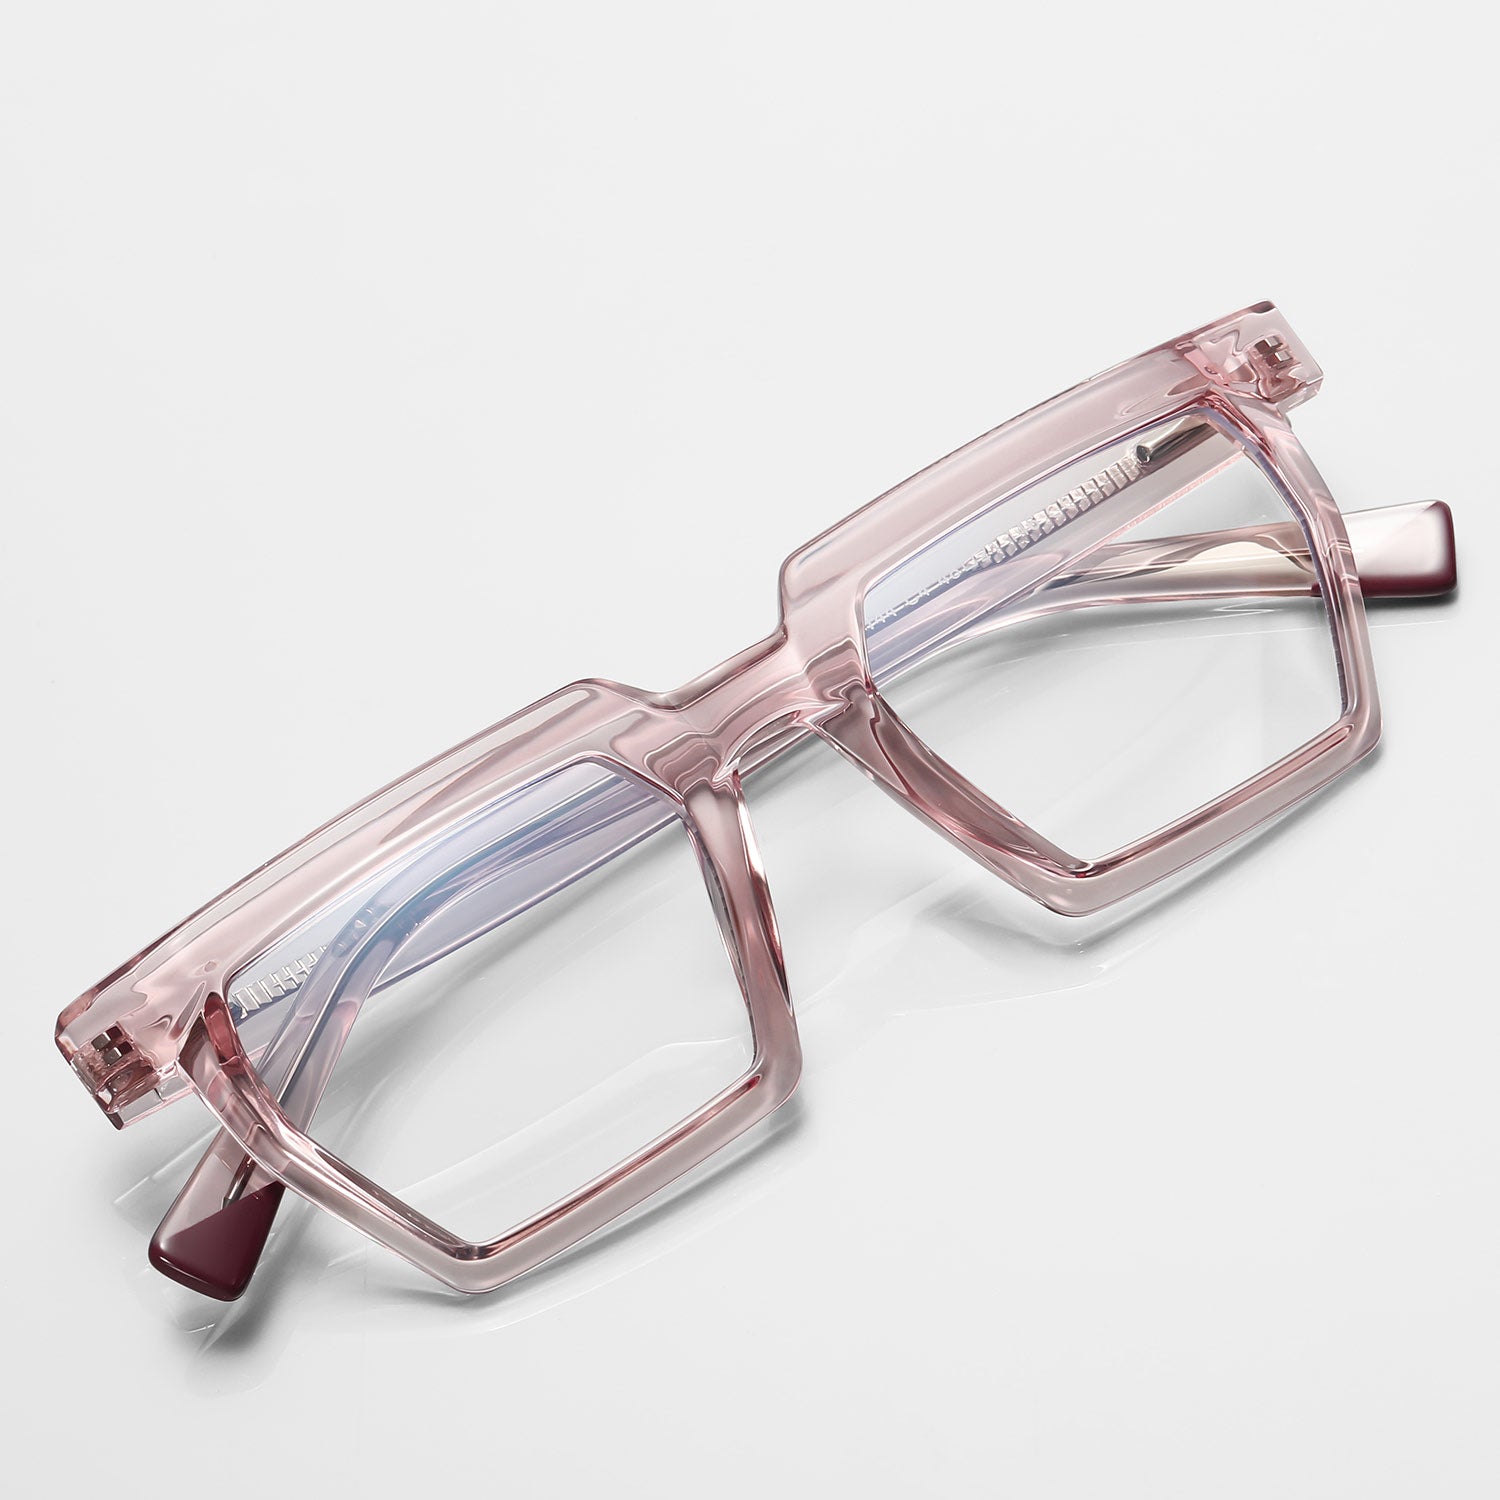 Beim | Rectangle/Pink/TR90 - Eyeglasses | ELKLOOK